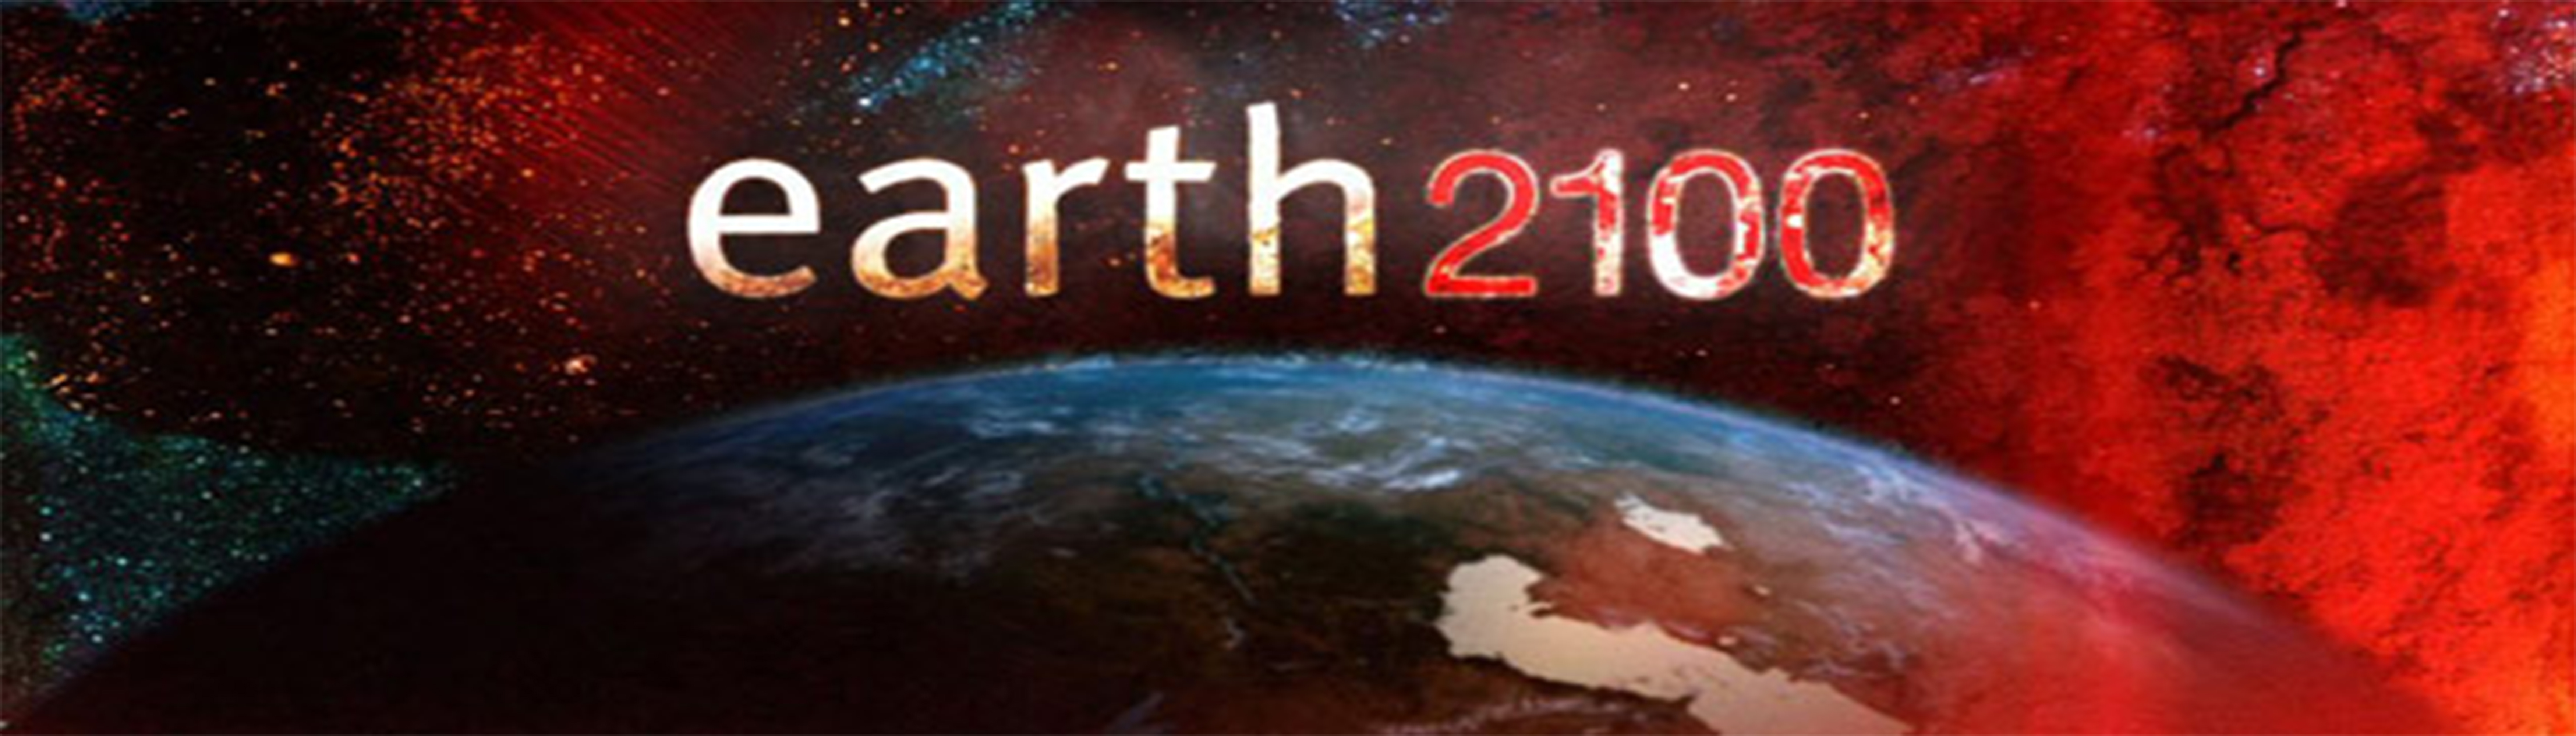 دانلود فیلم مستند Earth 2100